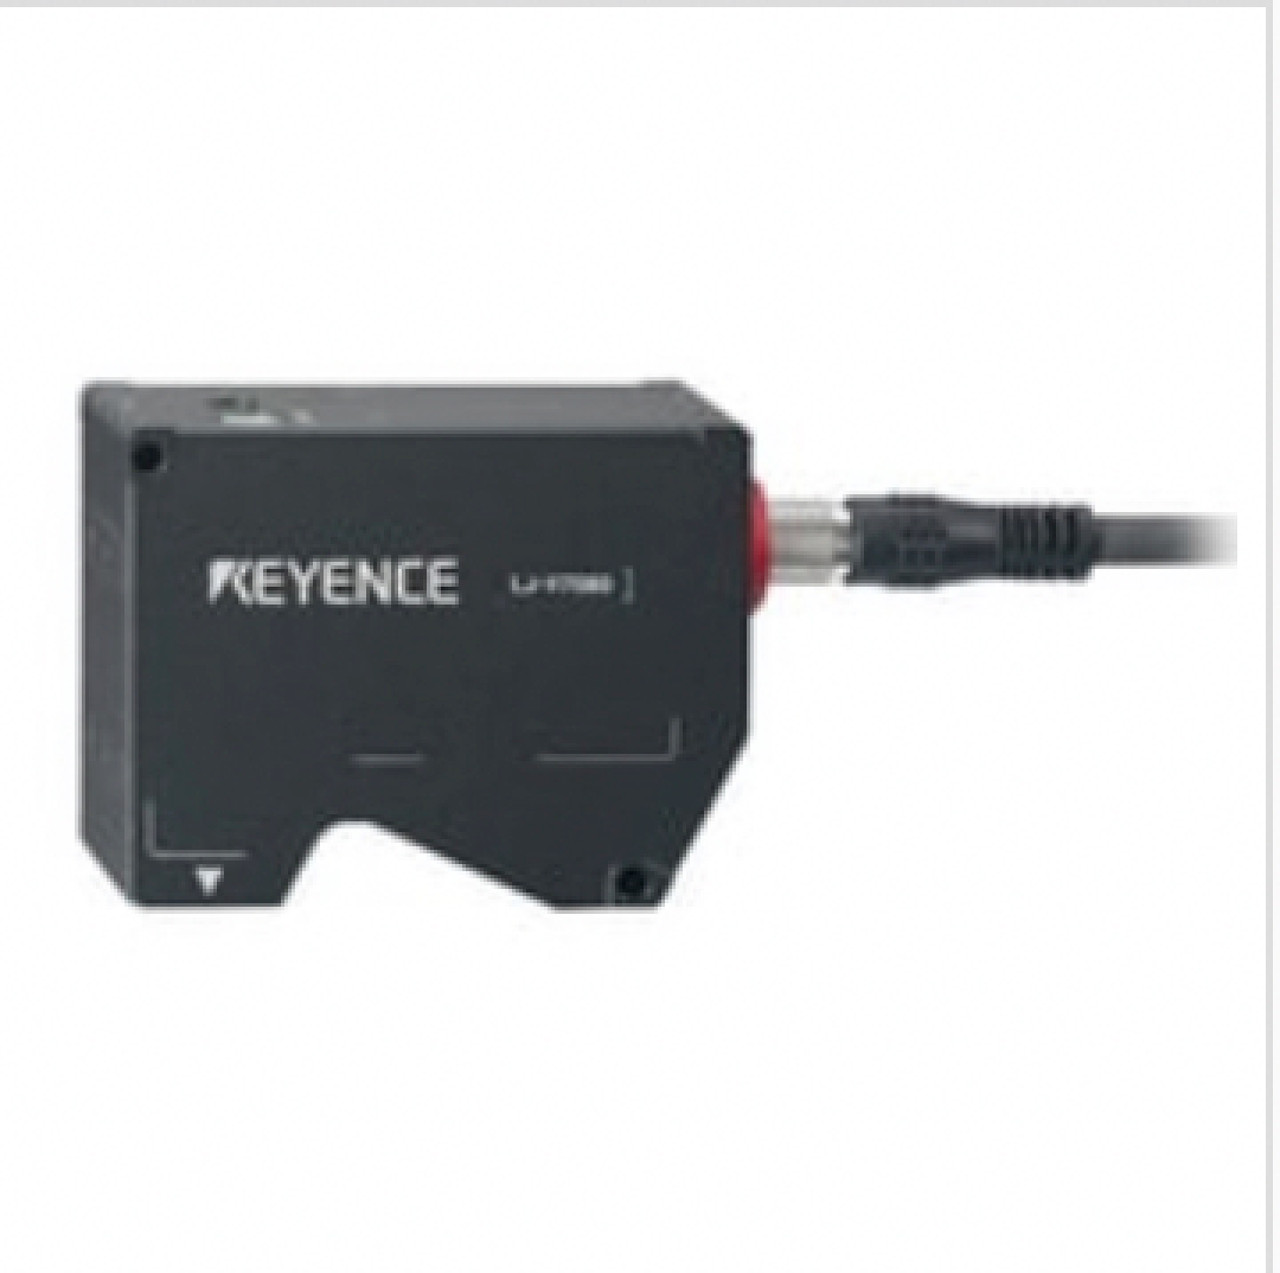 Keyence LJ-V7020 High-Speed 2D Laser Profiler, Sensor Head [New]